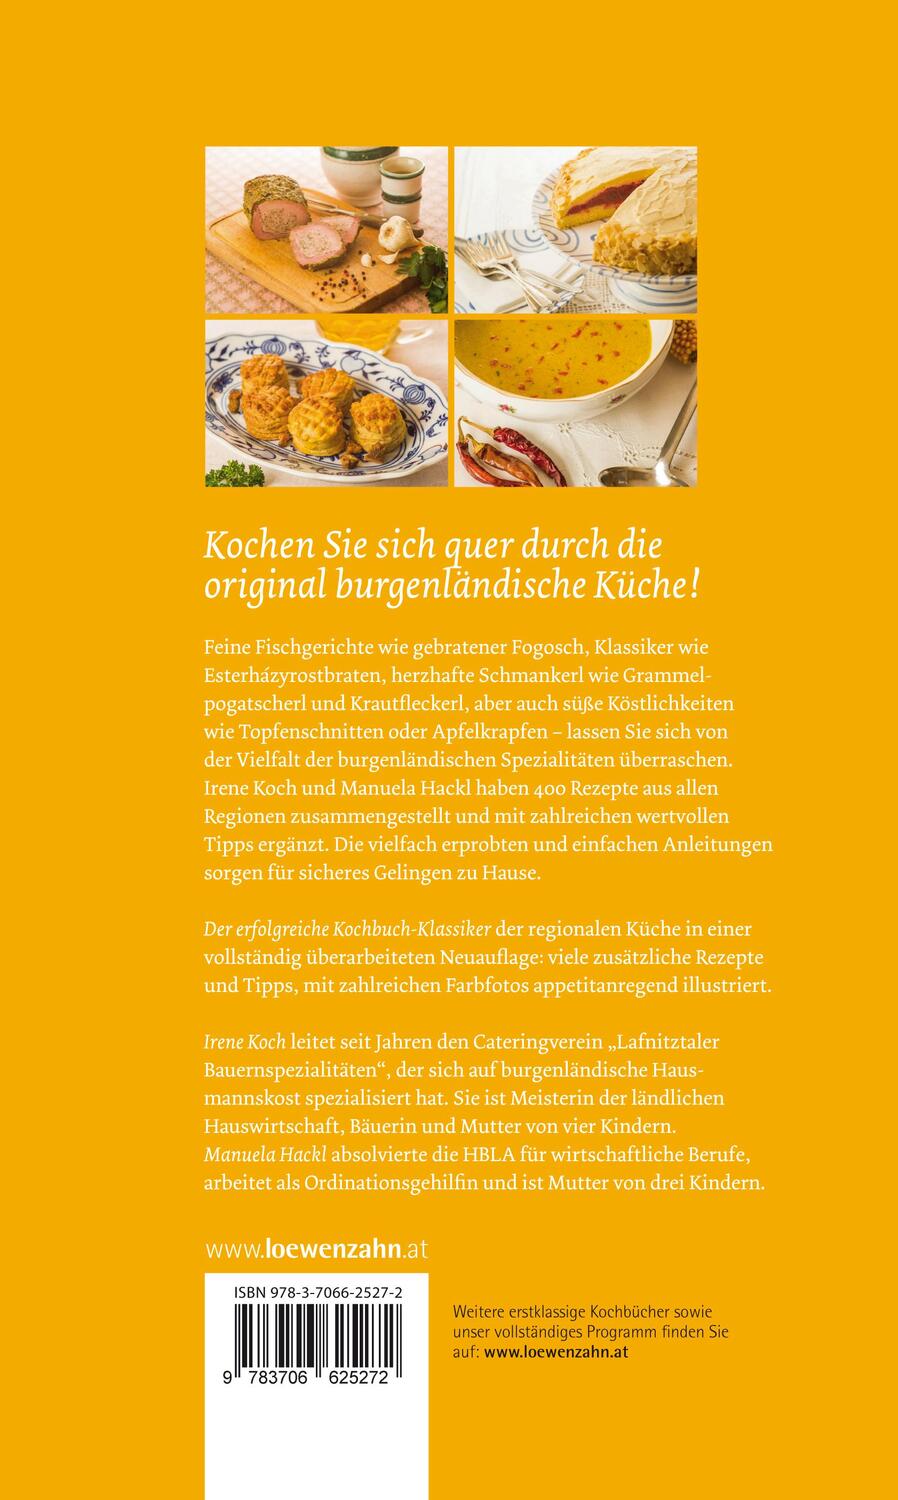 Bild: 9783706625272 | Burgenländische Bäuerinnen kochen | Einfach gute Rezepte | Buch | 2013